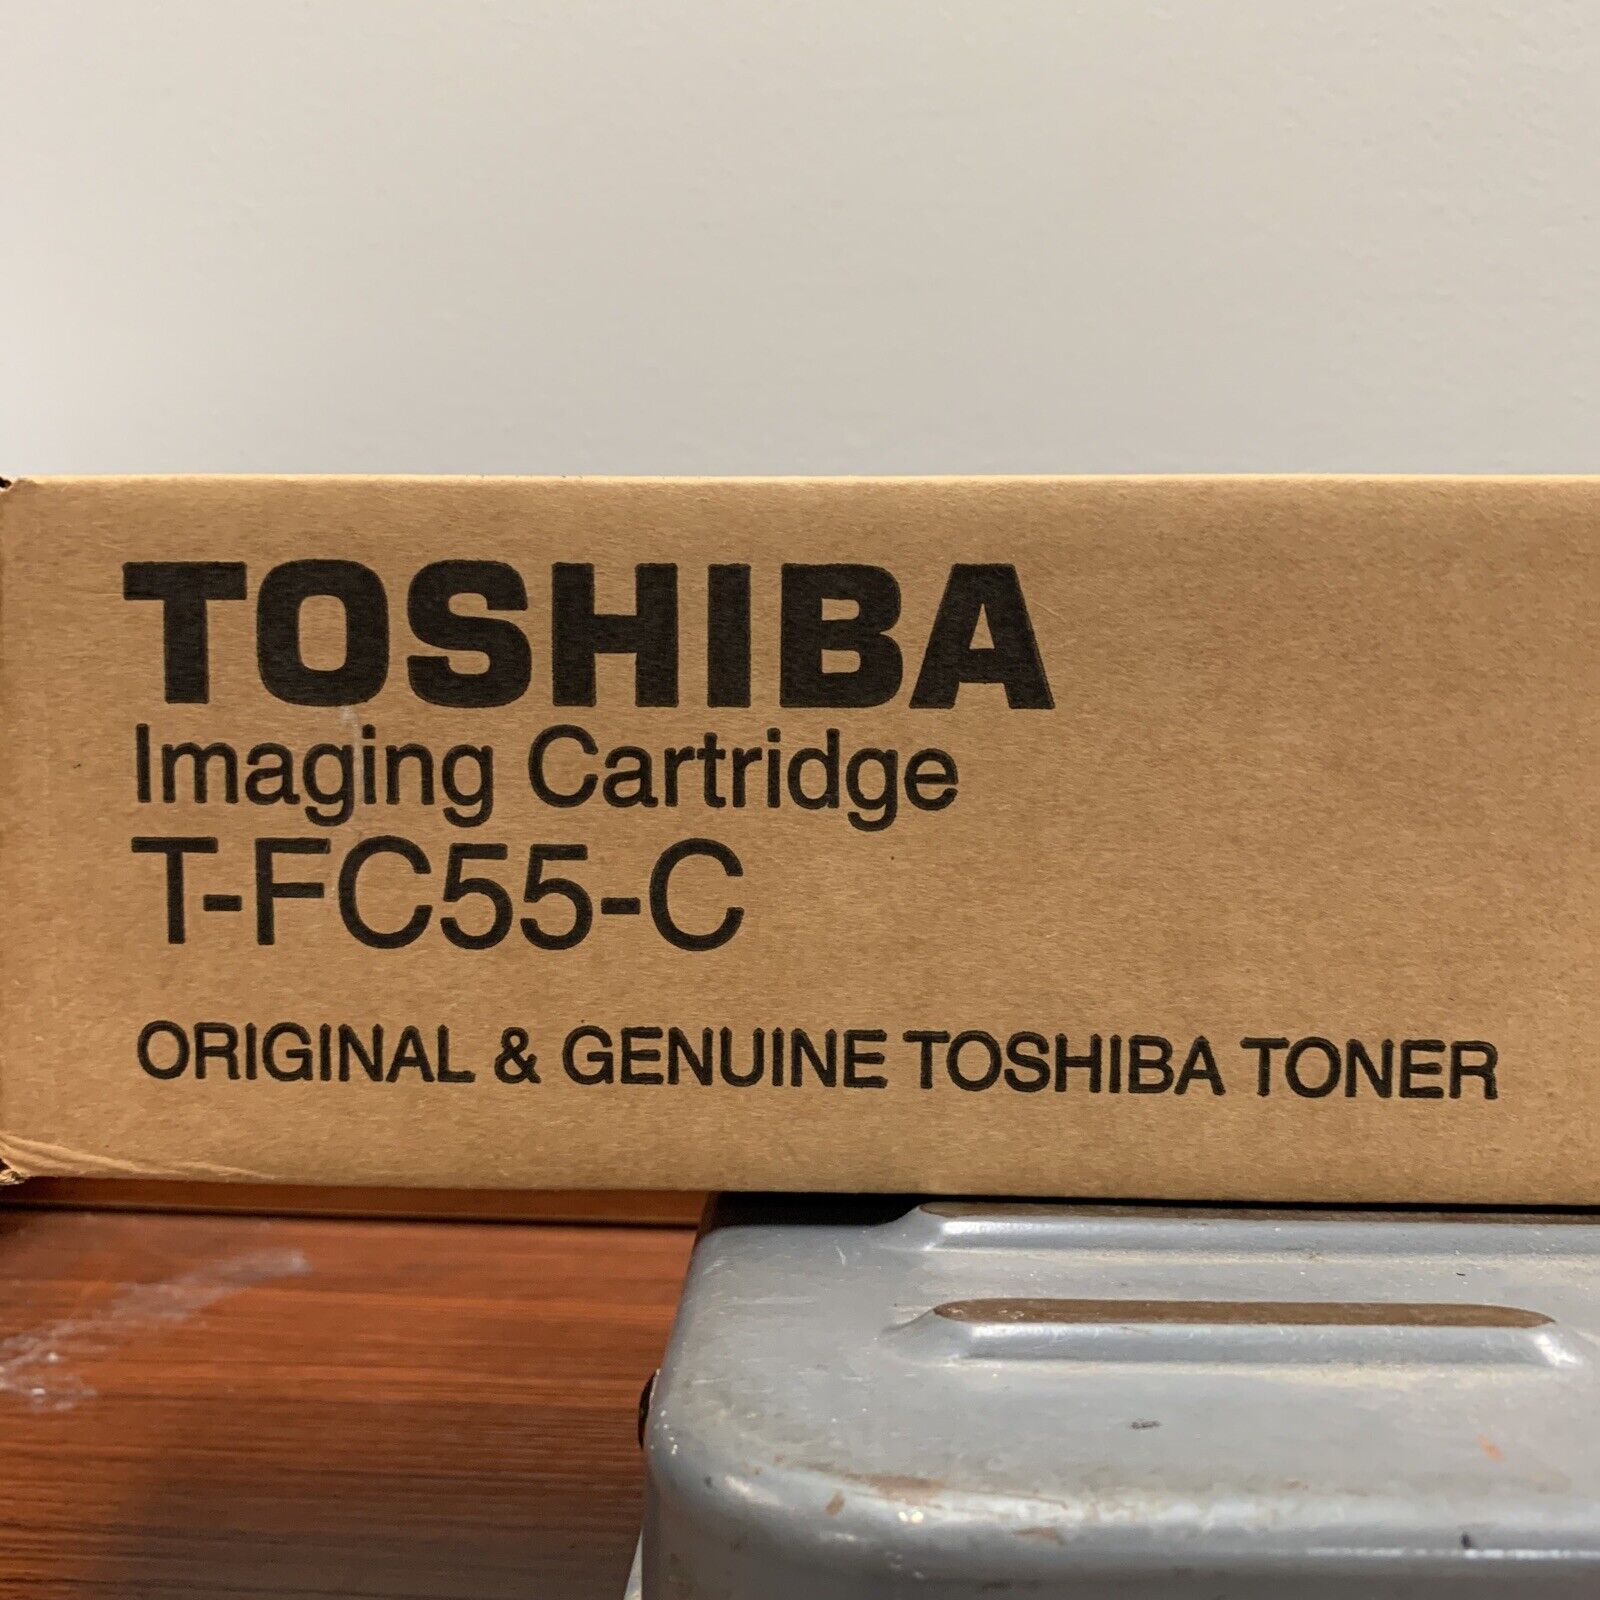 Toshiba T-FC55-C